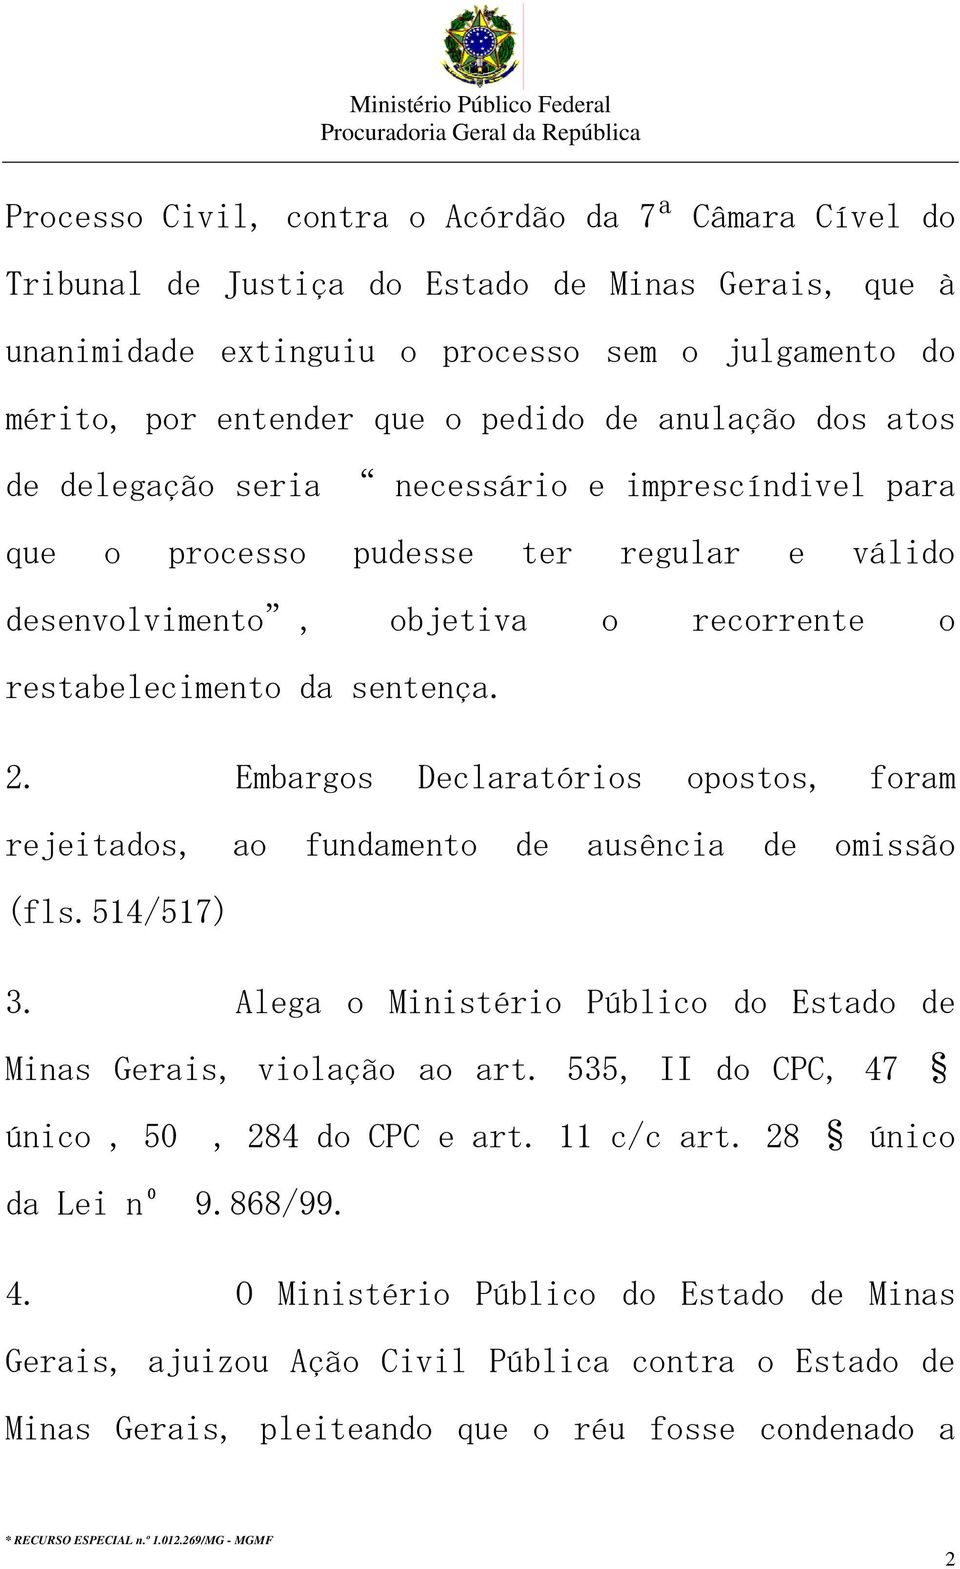 Embargos Declaratórios opostos, foram rejeitados, ao fundamento de ausência de omissão (fls.514/517) 3. Alega o Ministério Público do Estado de Minas Gerais, violação ao art.